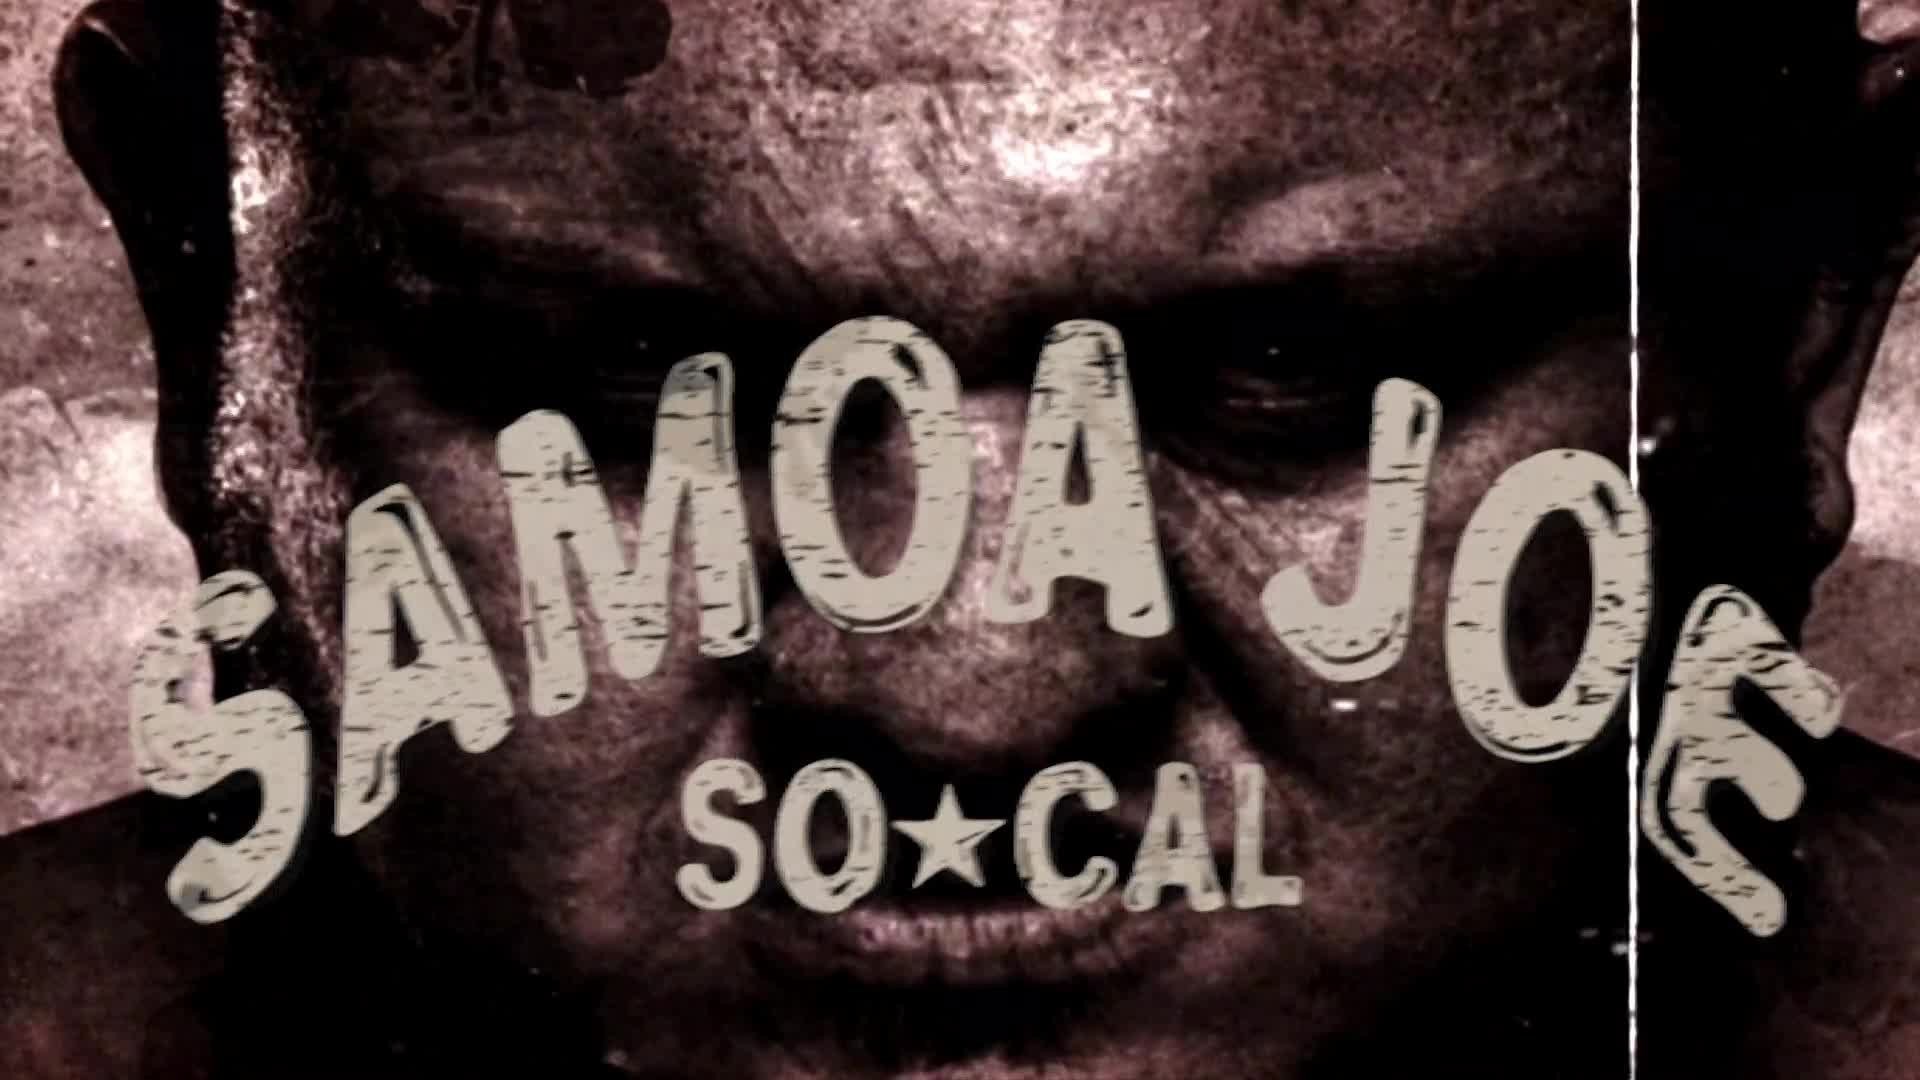 1920x1080 Somoa Joe Wallpaper Source Â· Samoa Joe Entrance VIdeo WWE